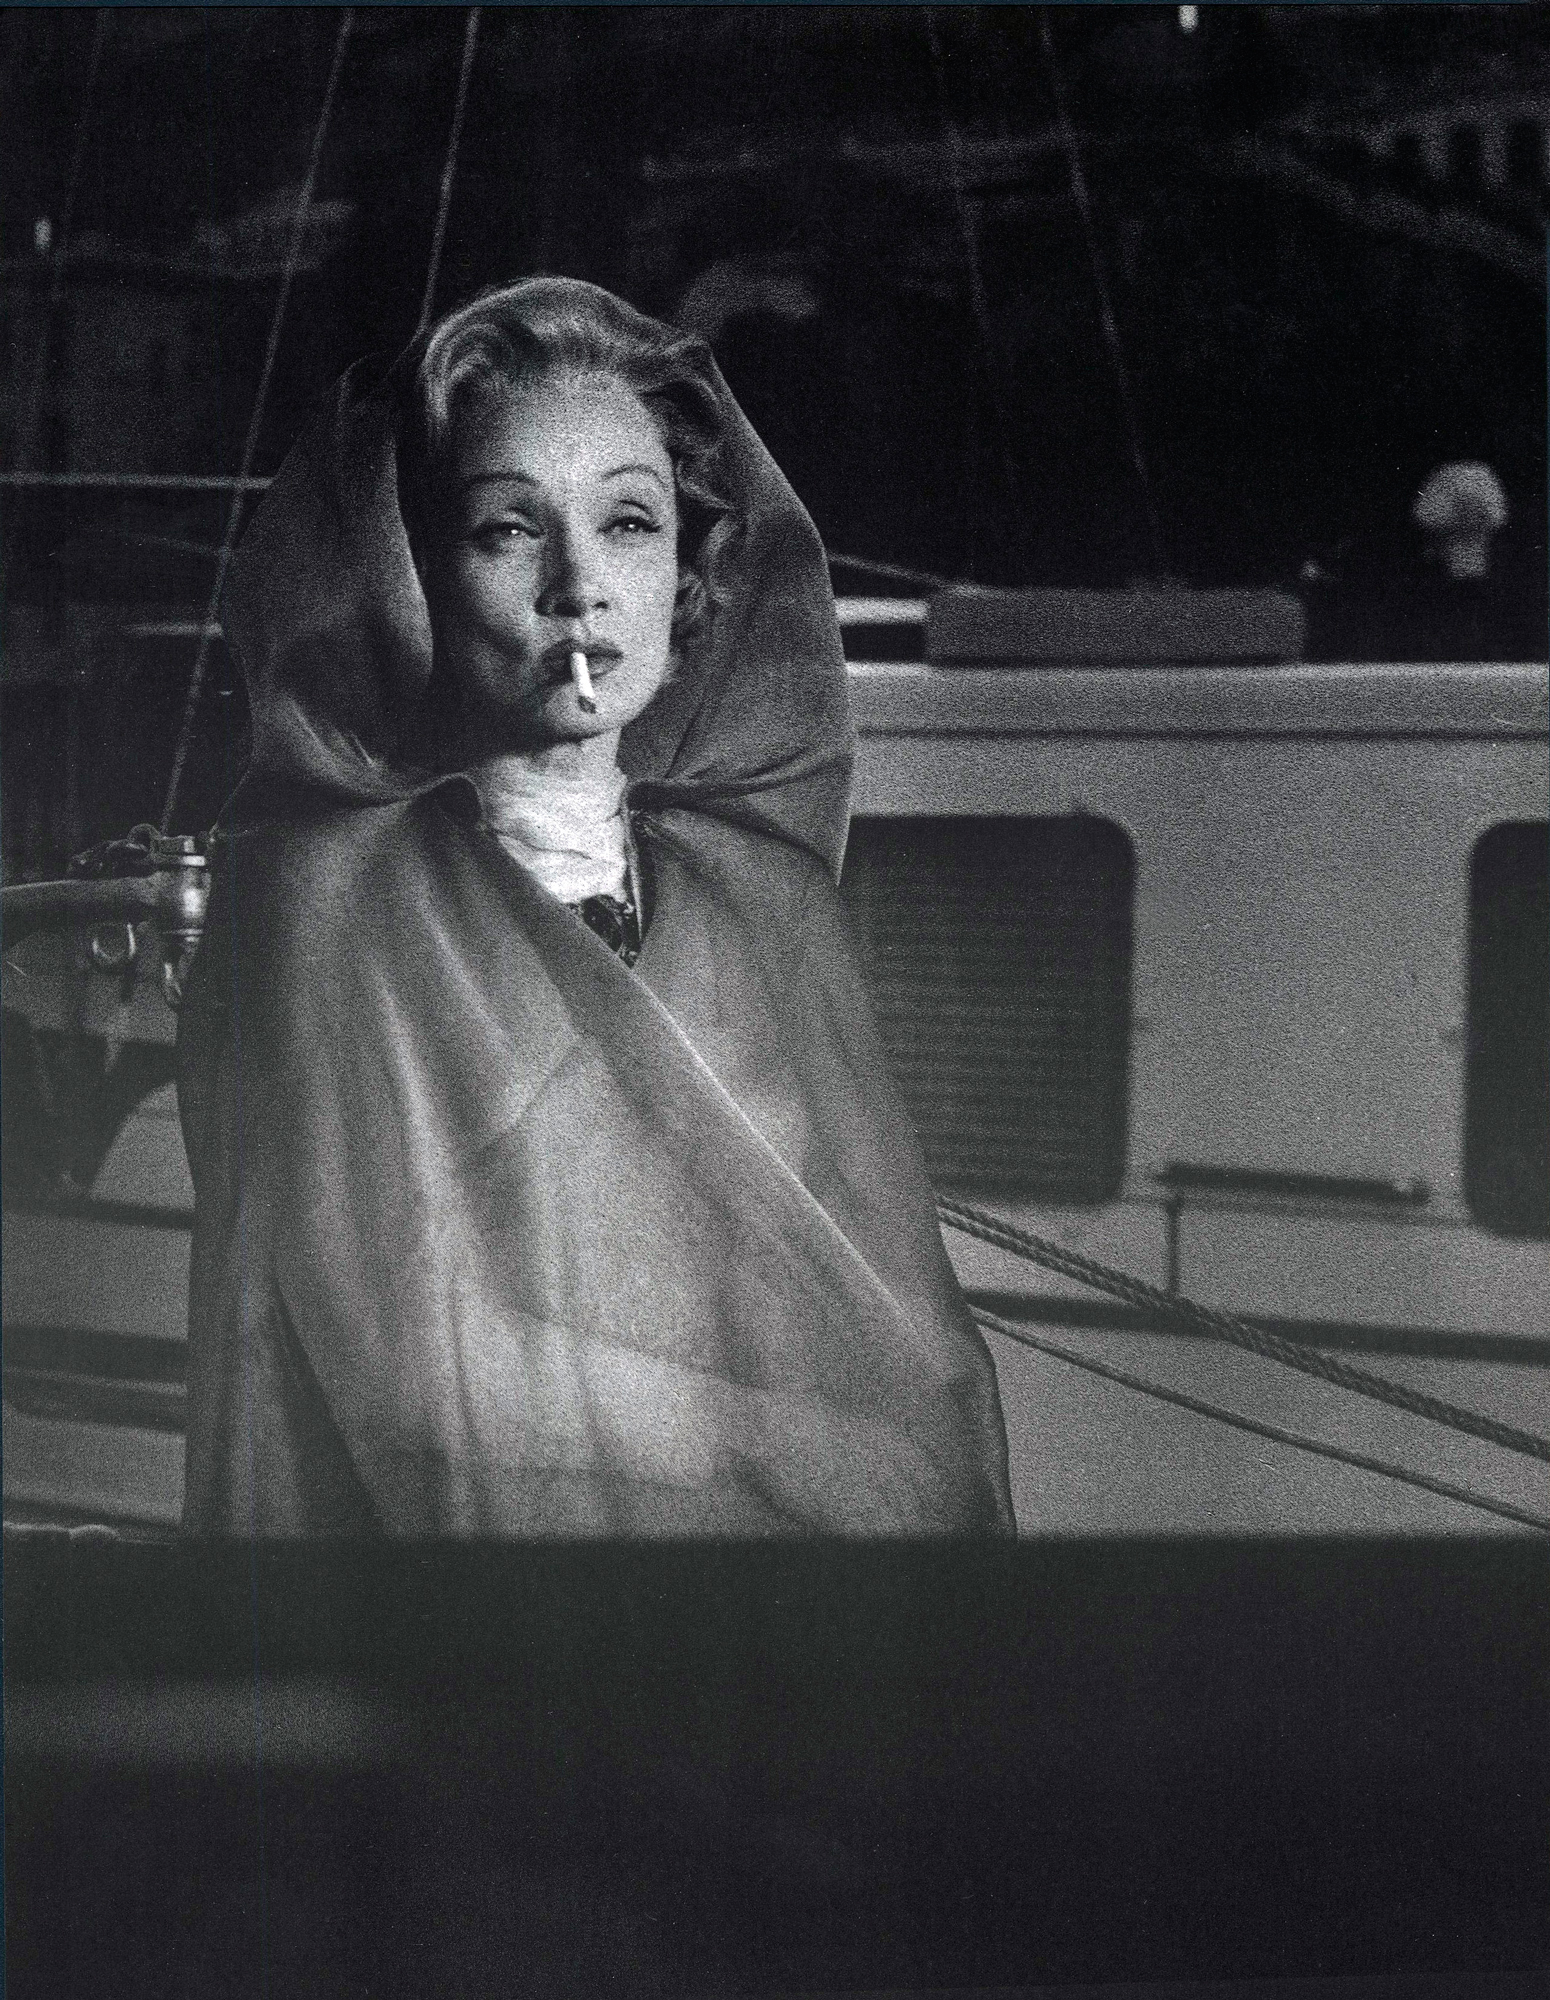 Fotó: Mario de Biasi: Marlene Dietrich, Monte-Carlo, 1956 © Mario de Biasi/Mondadori Portfolio